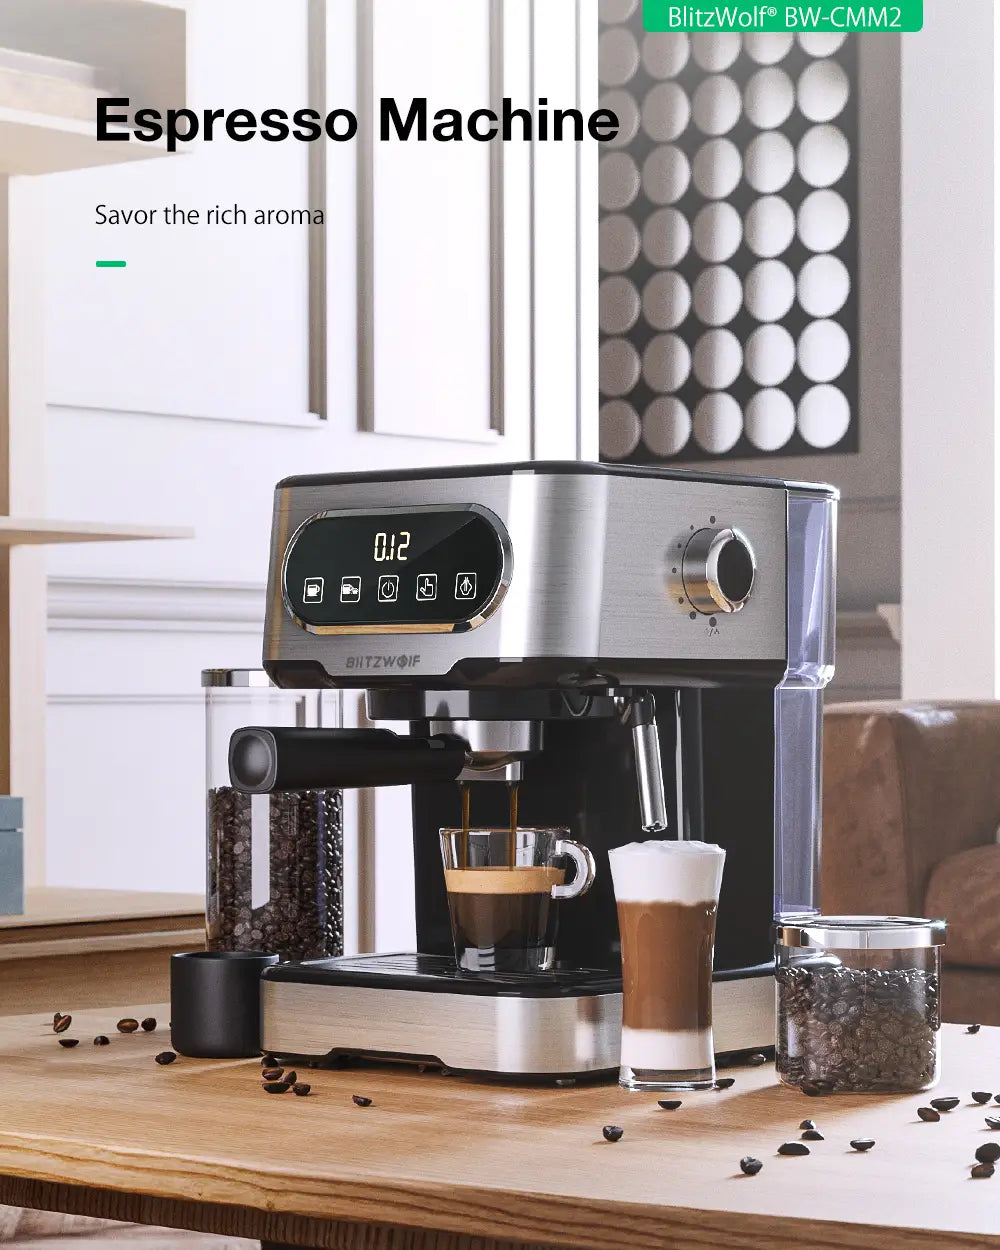 Blitzwolf Espresso Machine: 20 Bar Pressure Extraction